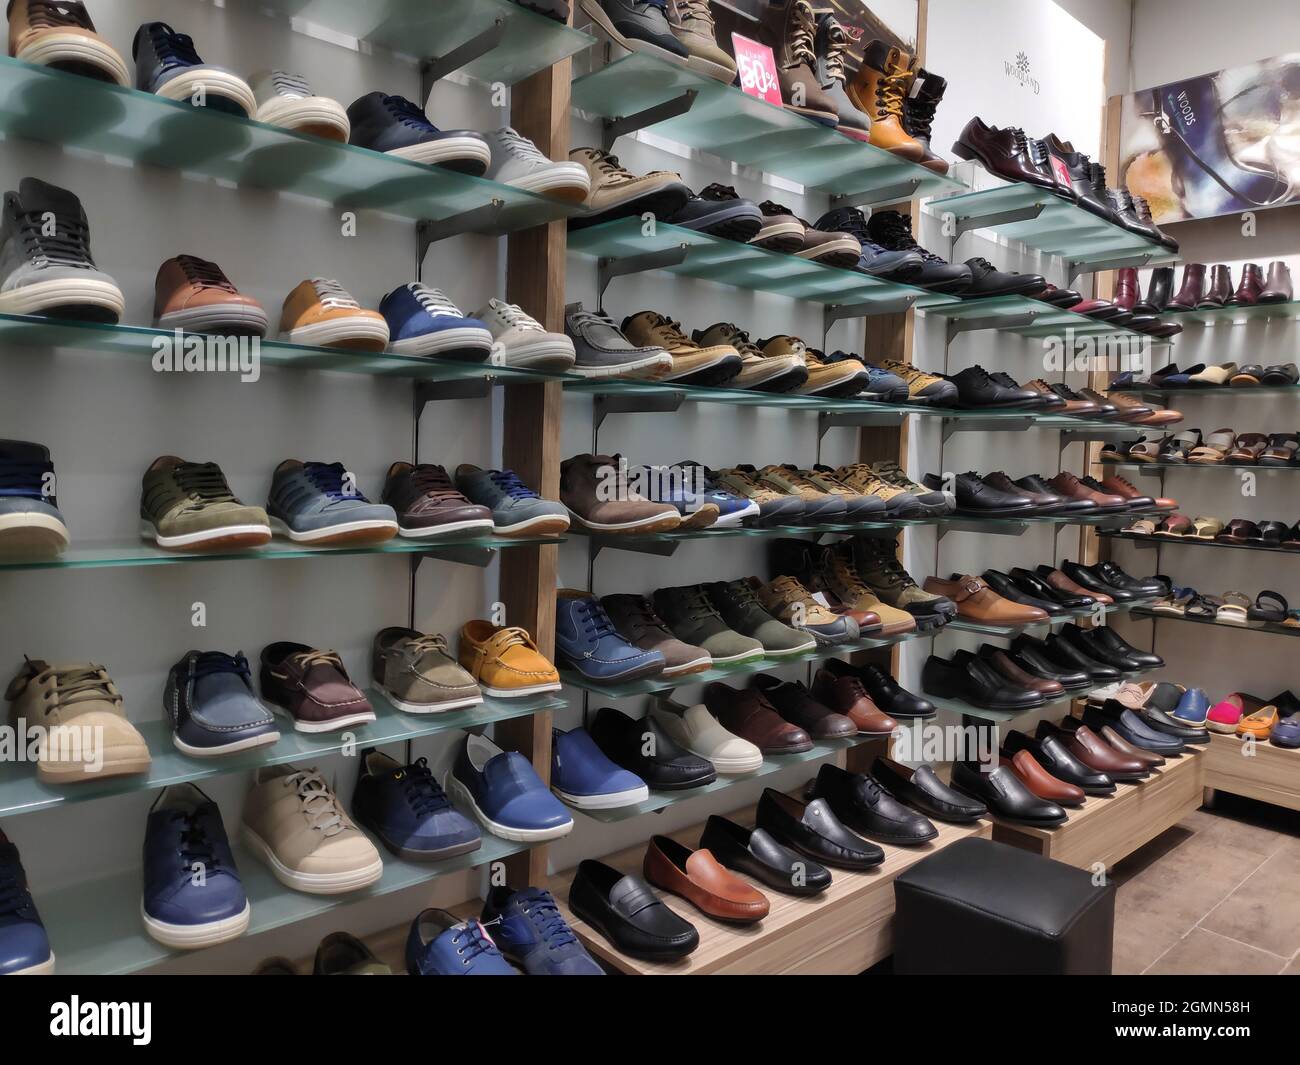 La Todos Los Tipos De Zapatos Baratos En Un Escaparate De Un Outlet Center Buenos Precios En Argentinos; Signos En Español Fotografía De Alamy | sptc.edu.bd